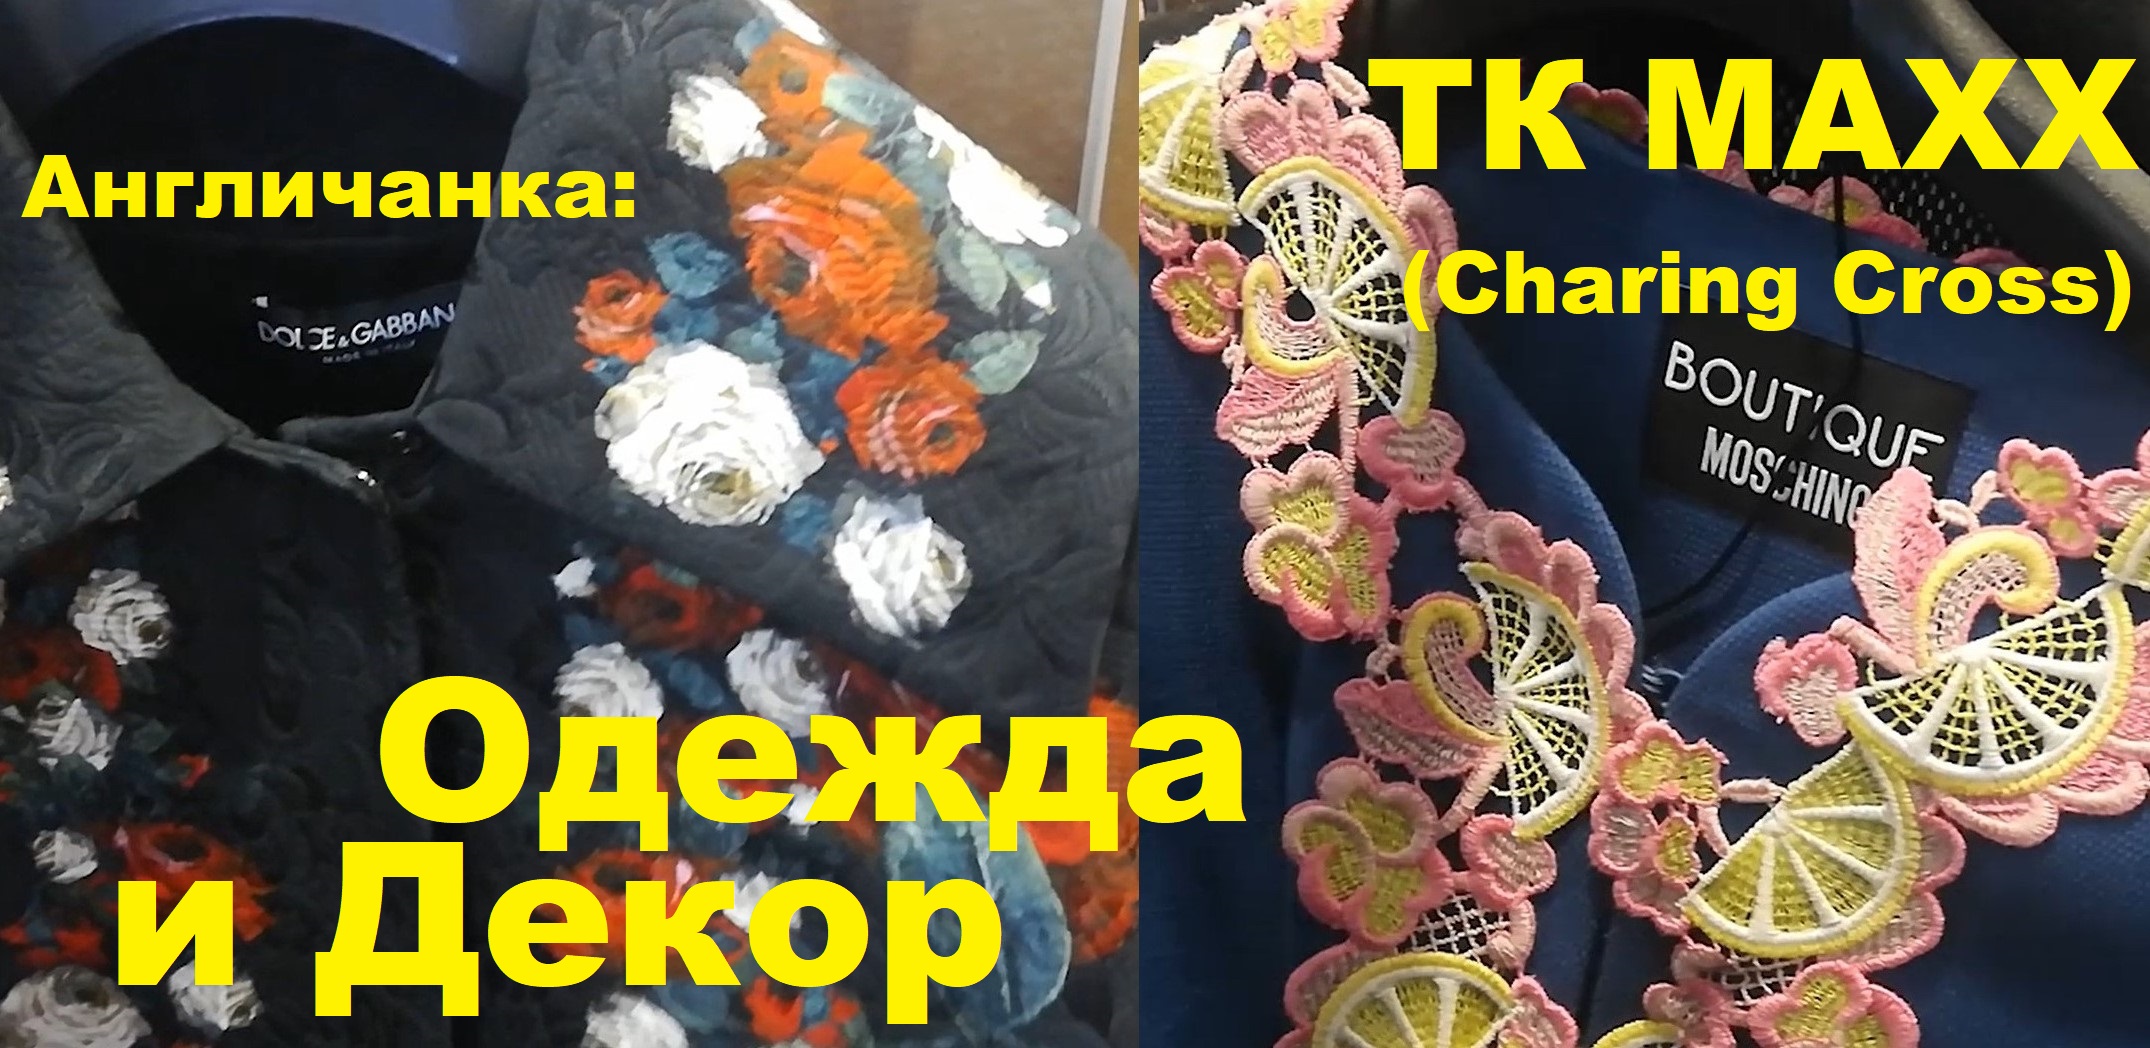 Дизайнерская одежда в магазине TK Maxx (Charing cross) + примерка